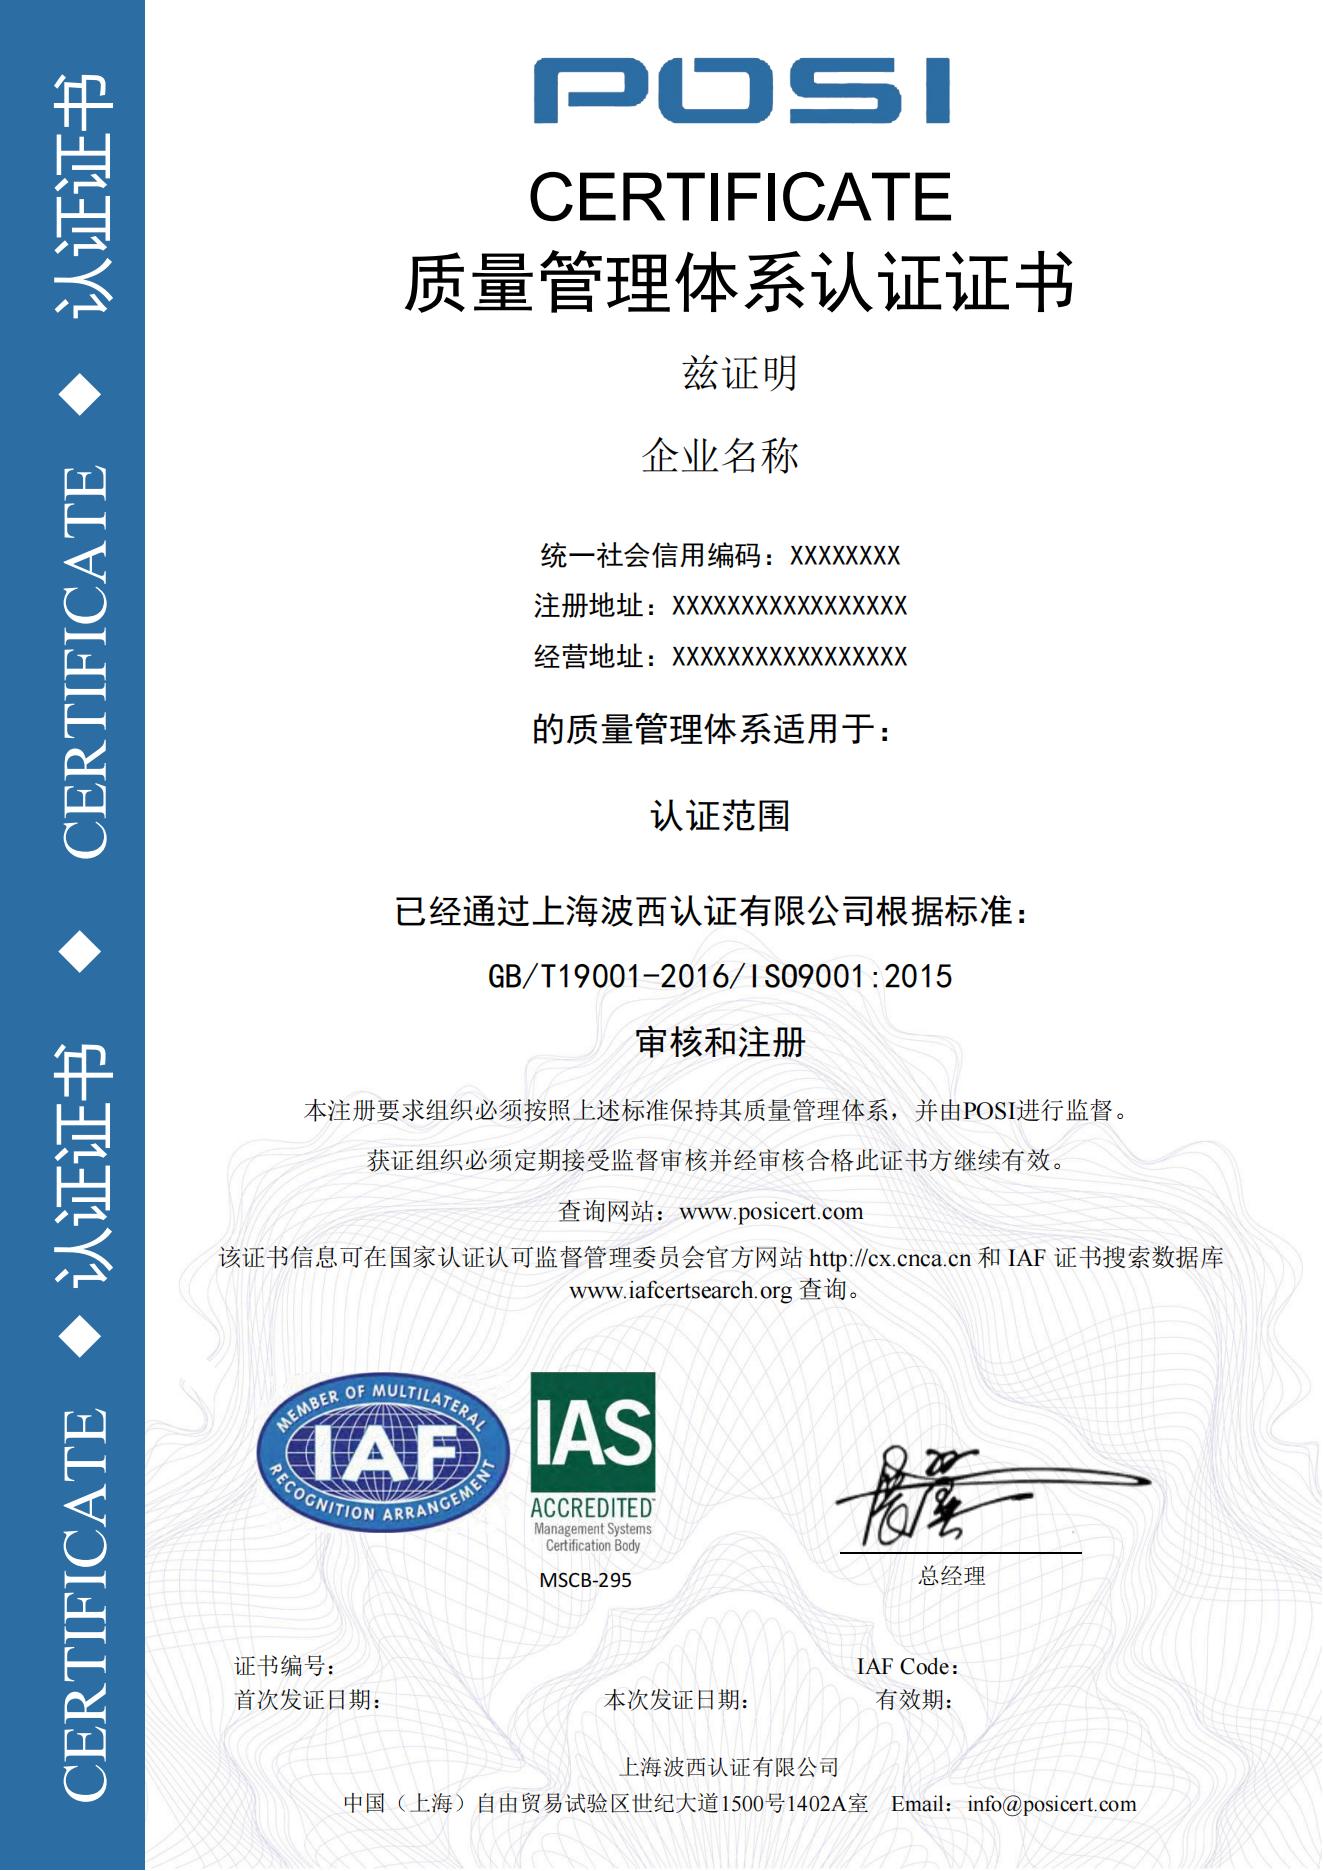 9001证书样本IAS